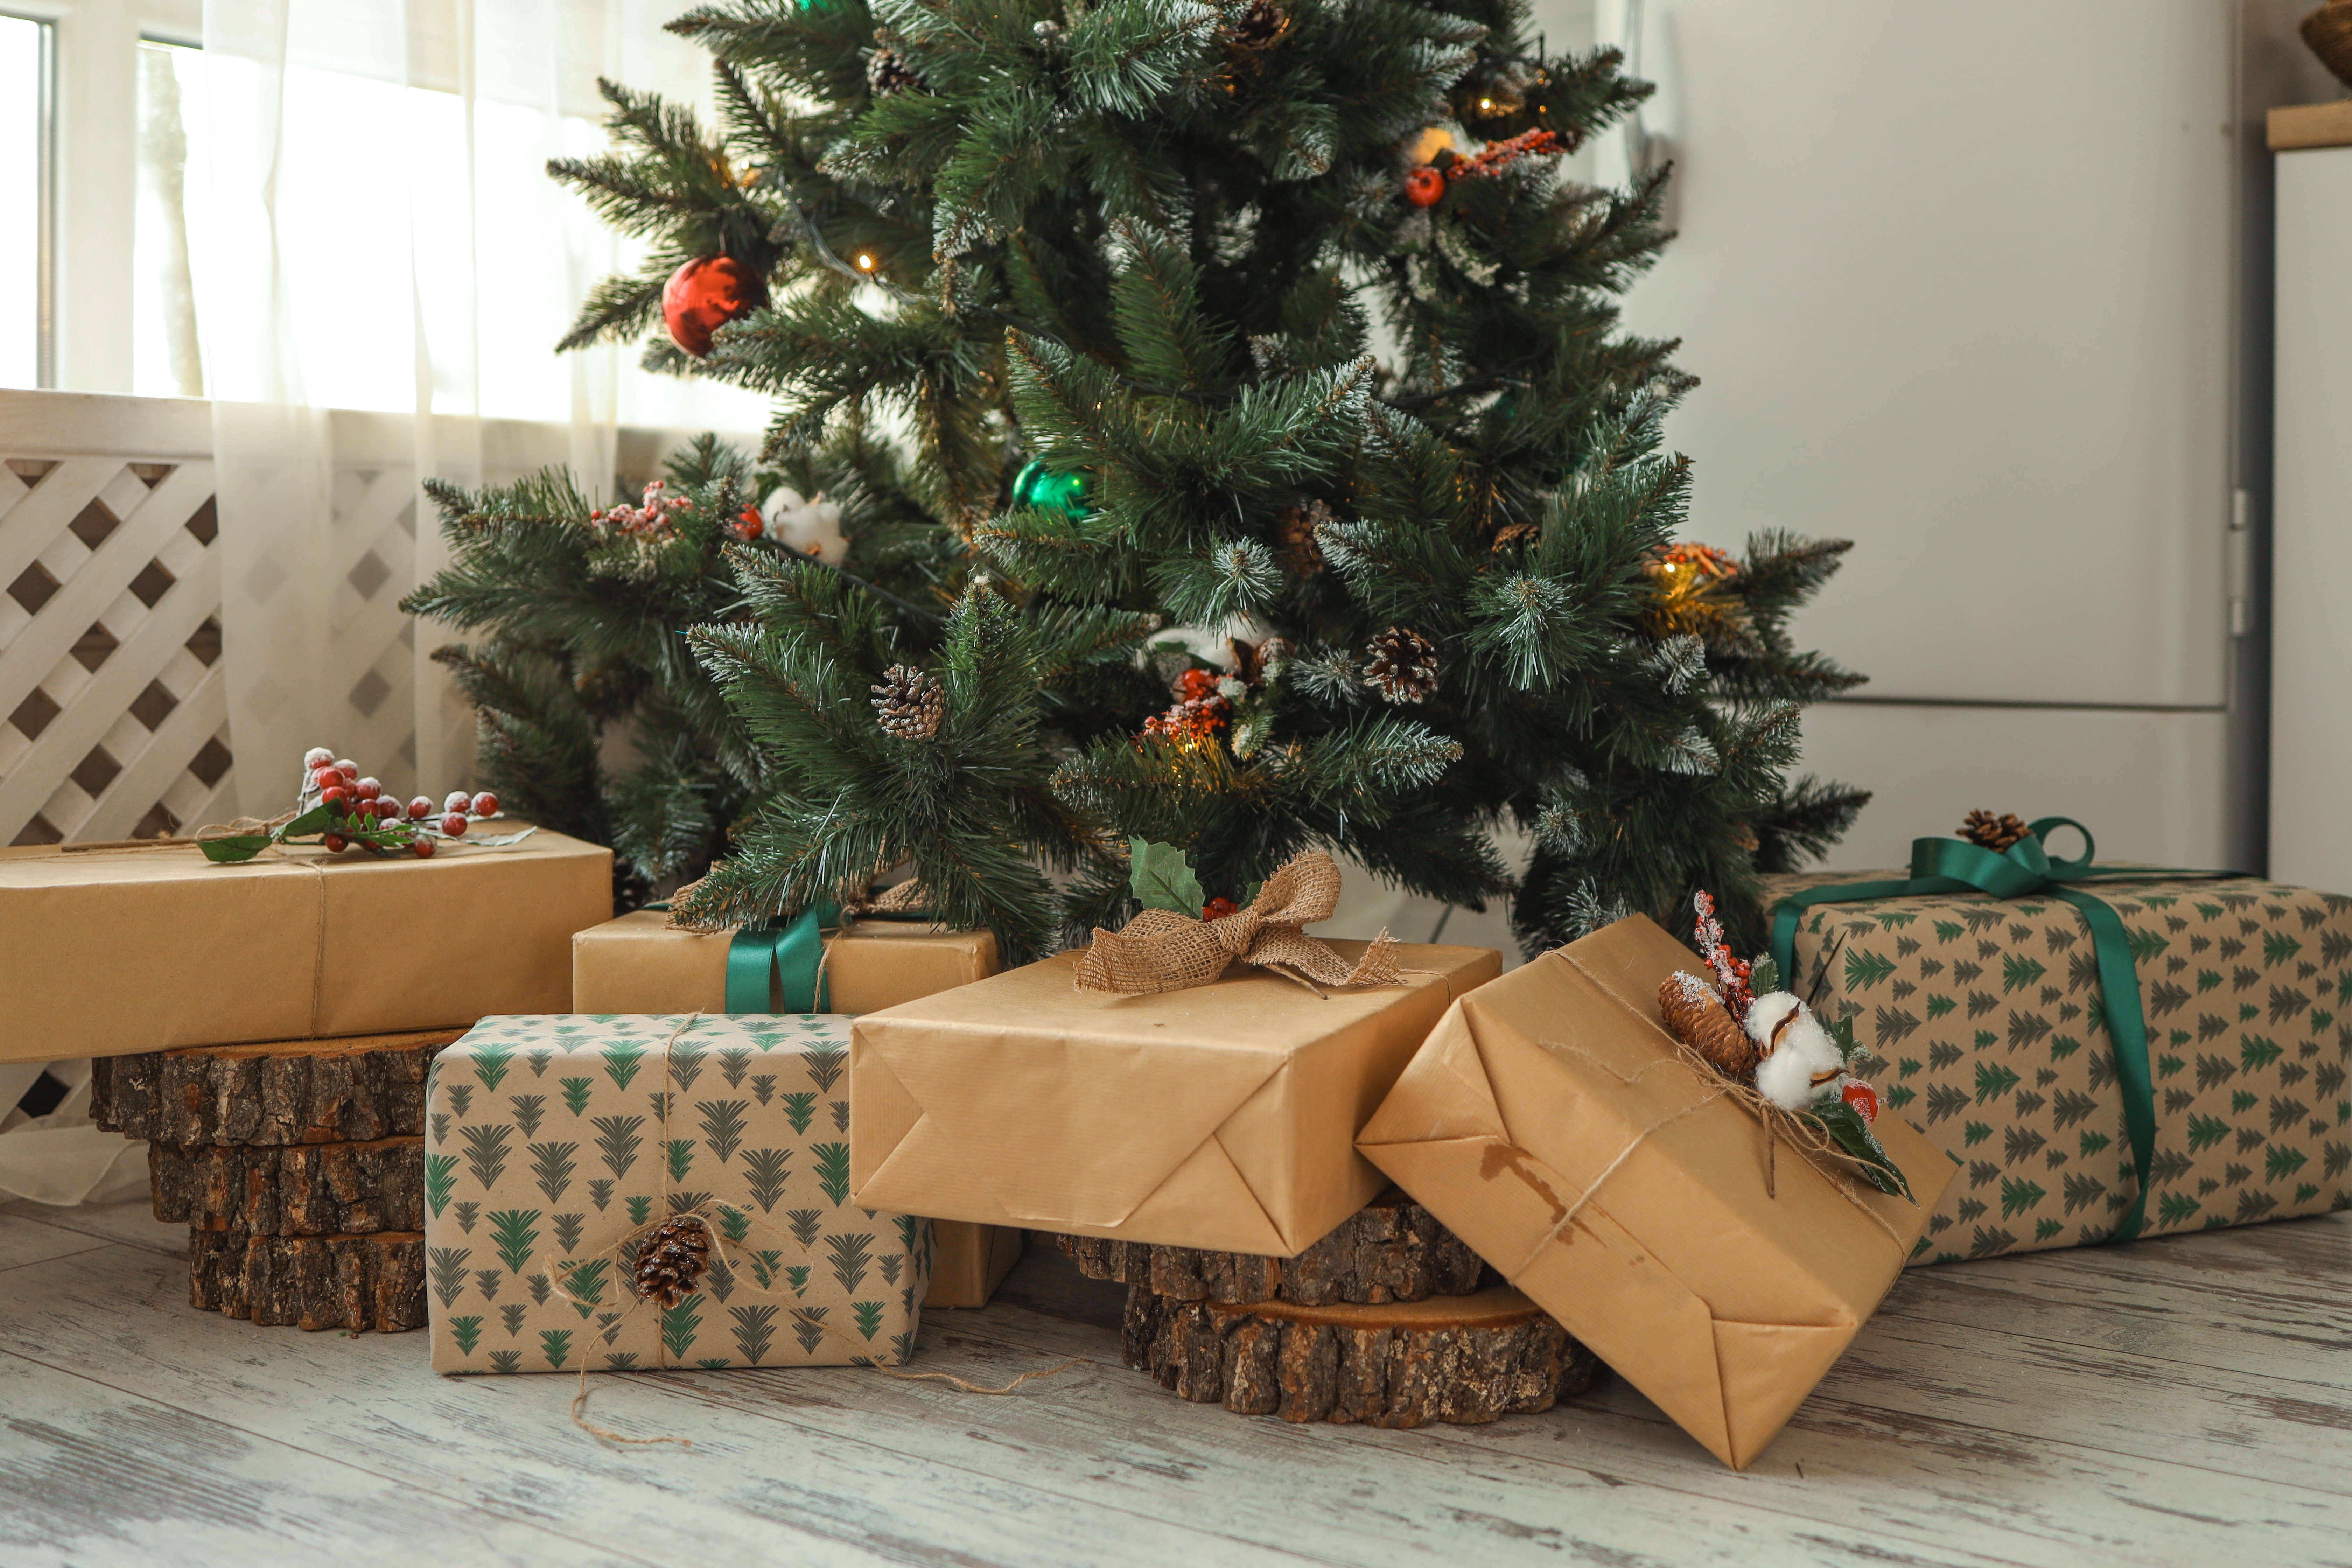 Ein Weihnachtsbaum mit Geschenken unter ihm | Quelle: Shutterstock